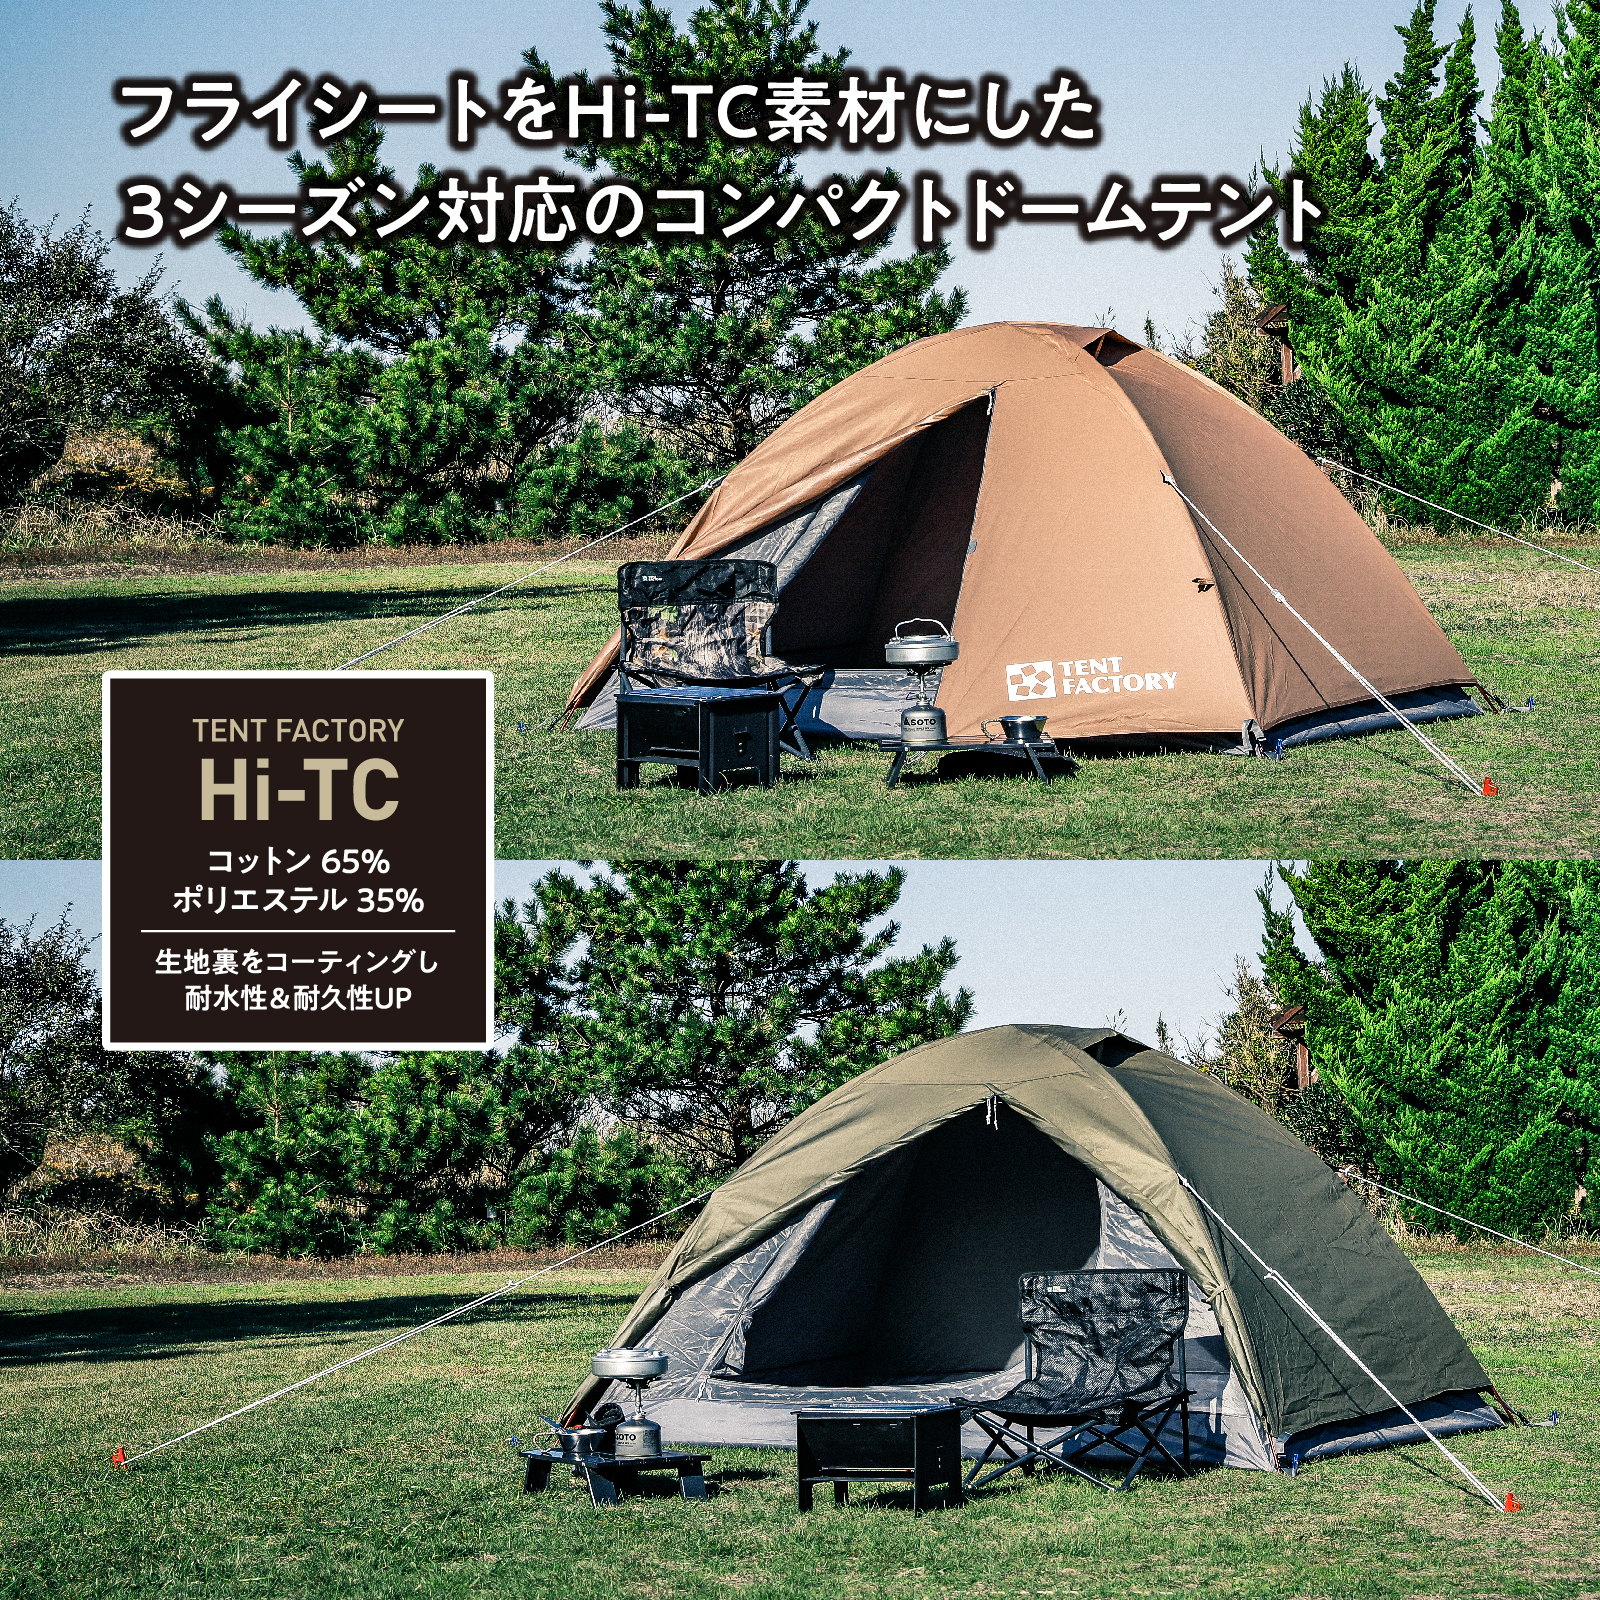 Hi-TCドームテント2 TF-TCD2A